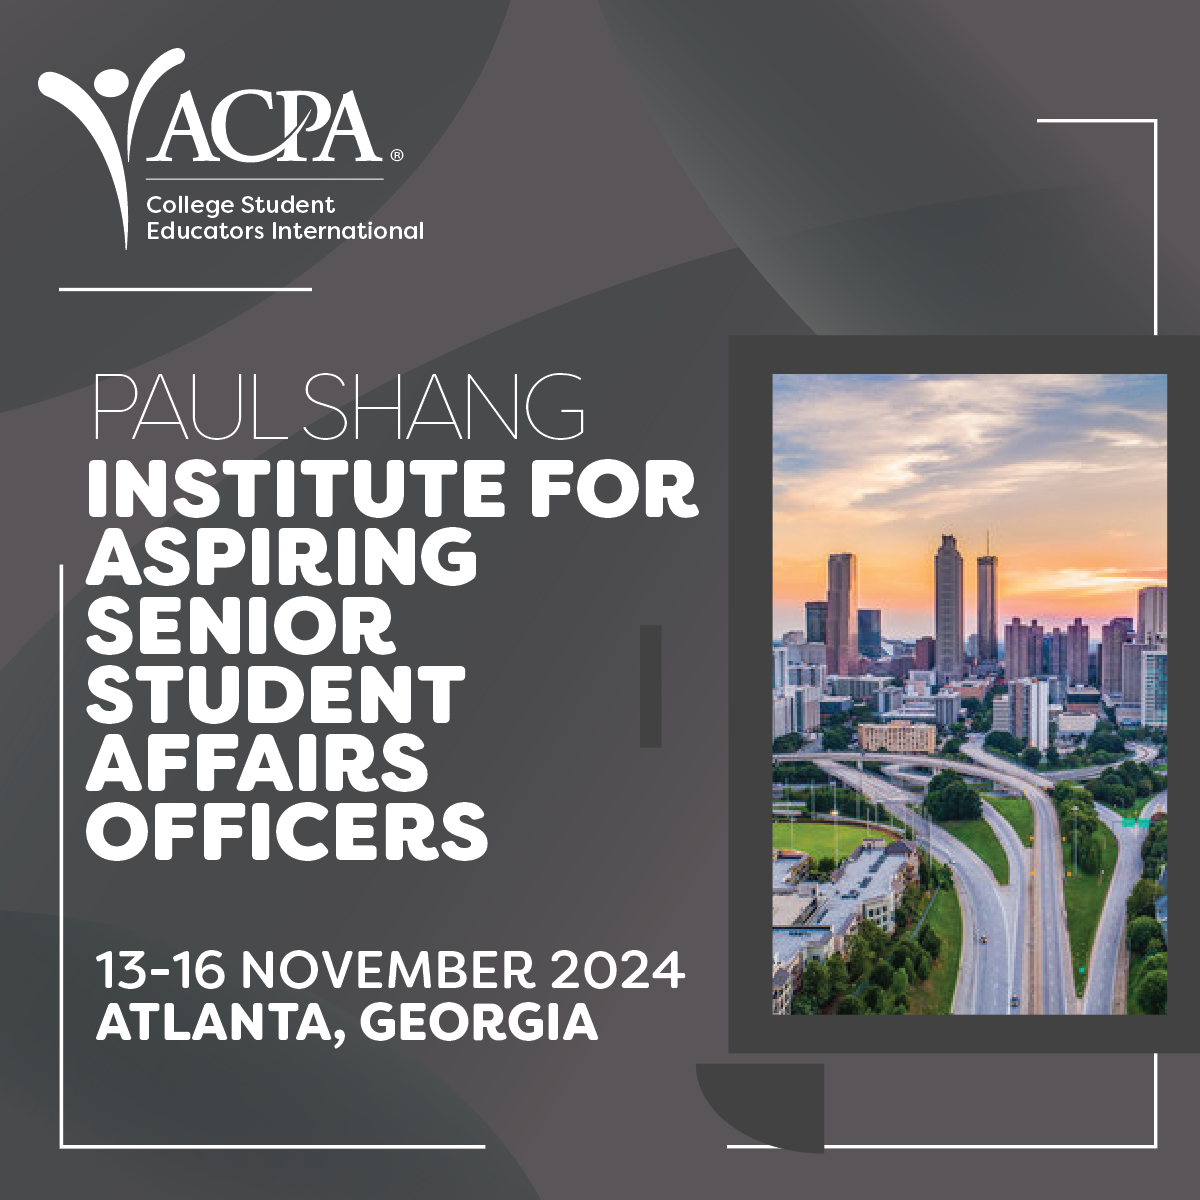 Paul Shang Institute for Aspiring Senior Student Affairs Officers 13-16 November 2024 Atlanta, Georgia